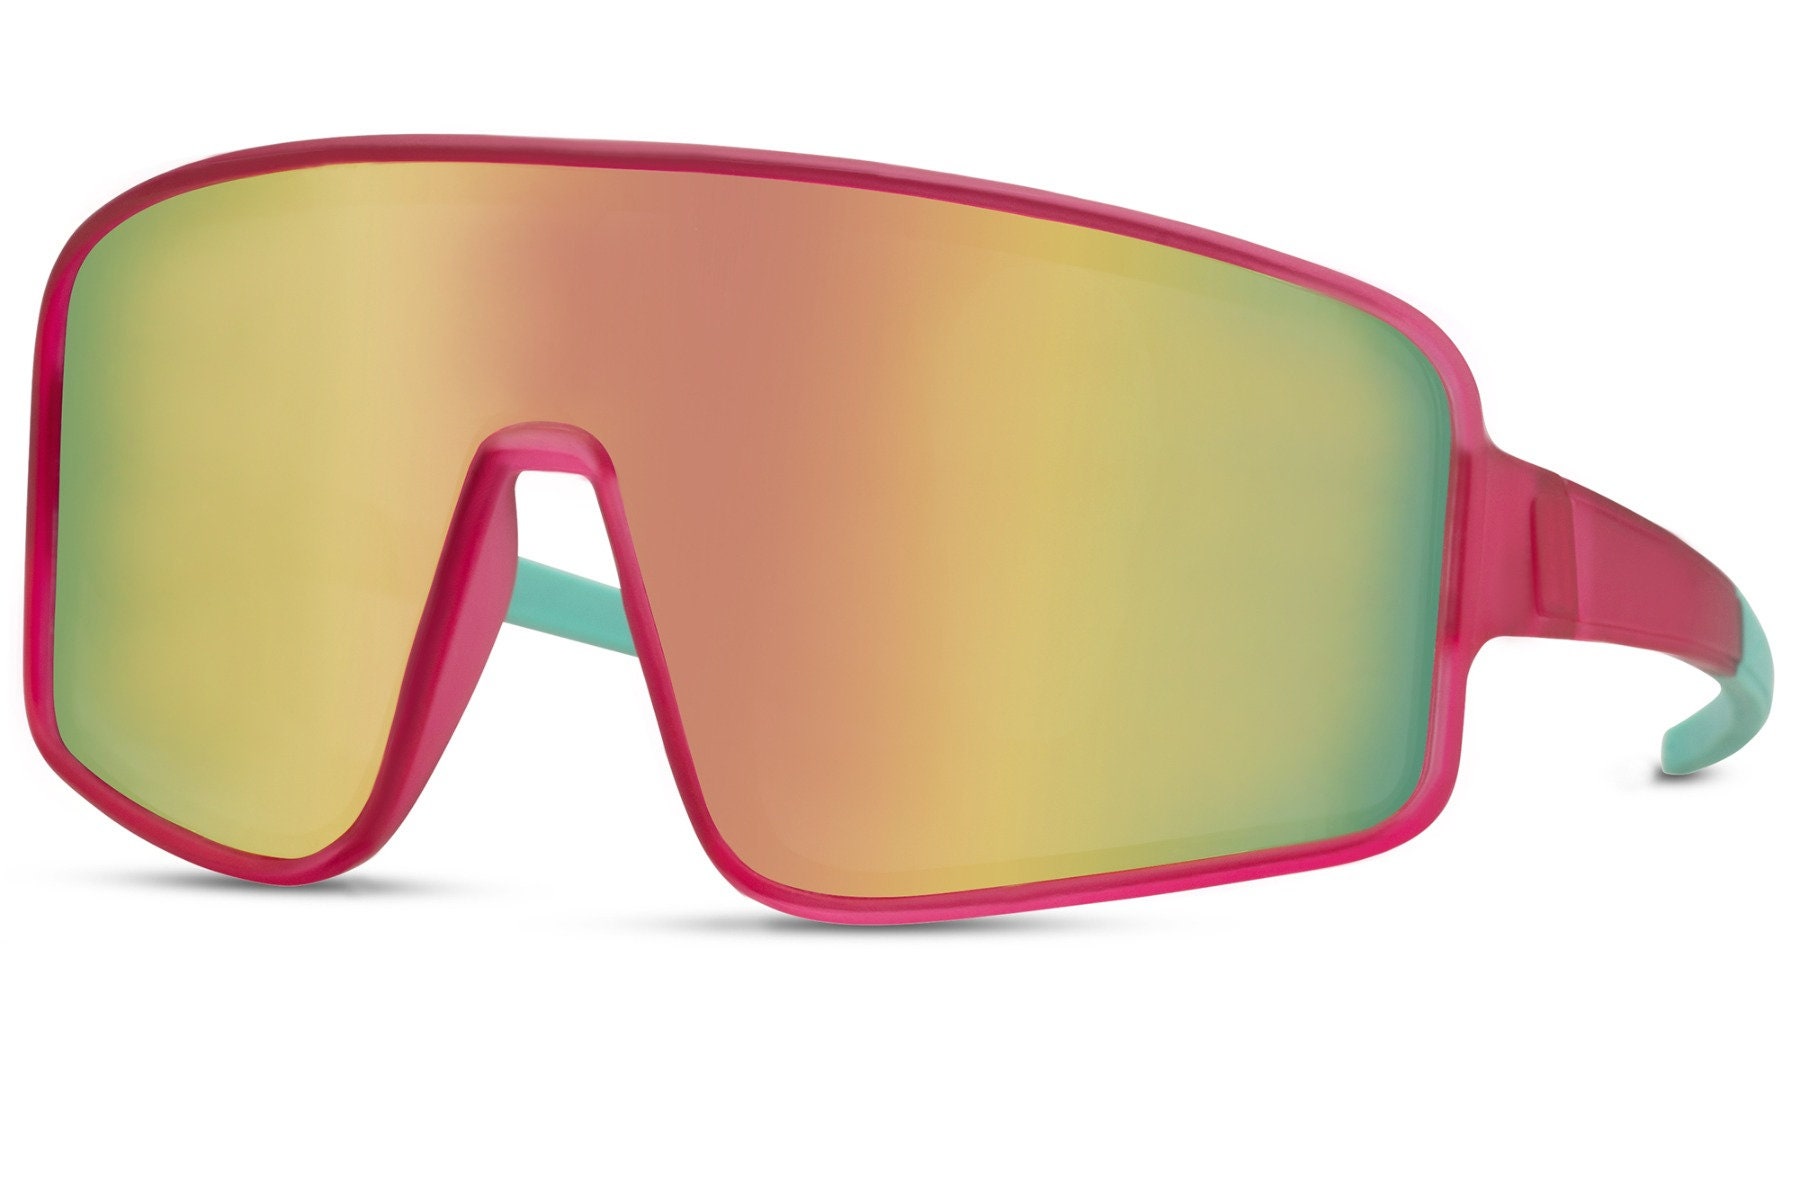 Sport Performance Sonnenbrillen SnowDay Verspiegelt Ultraleichte